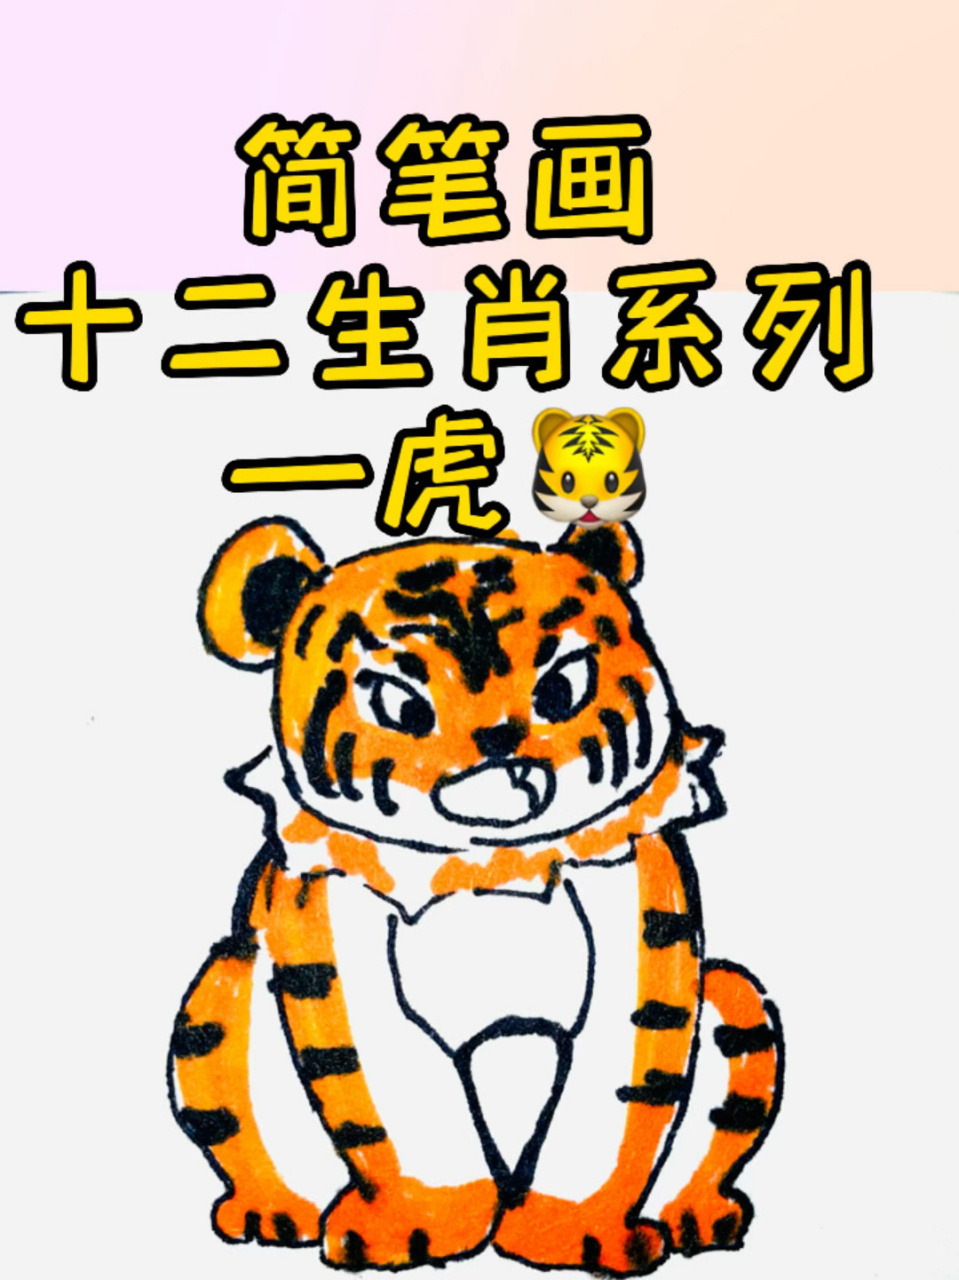 老虎的简易画法 卡通图片